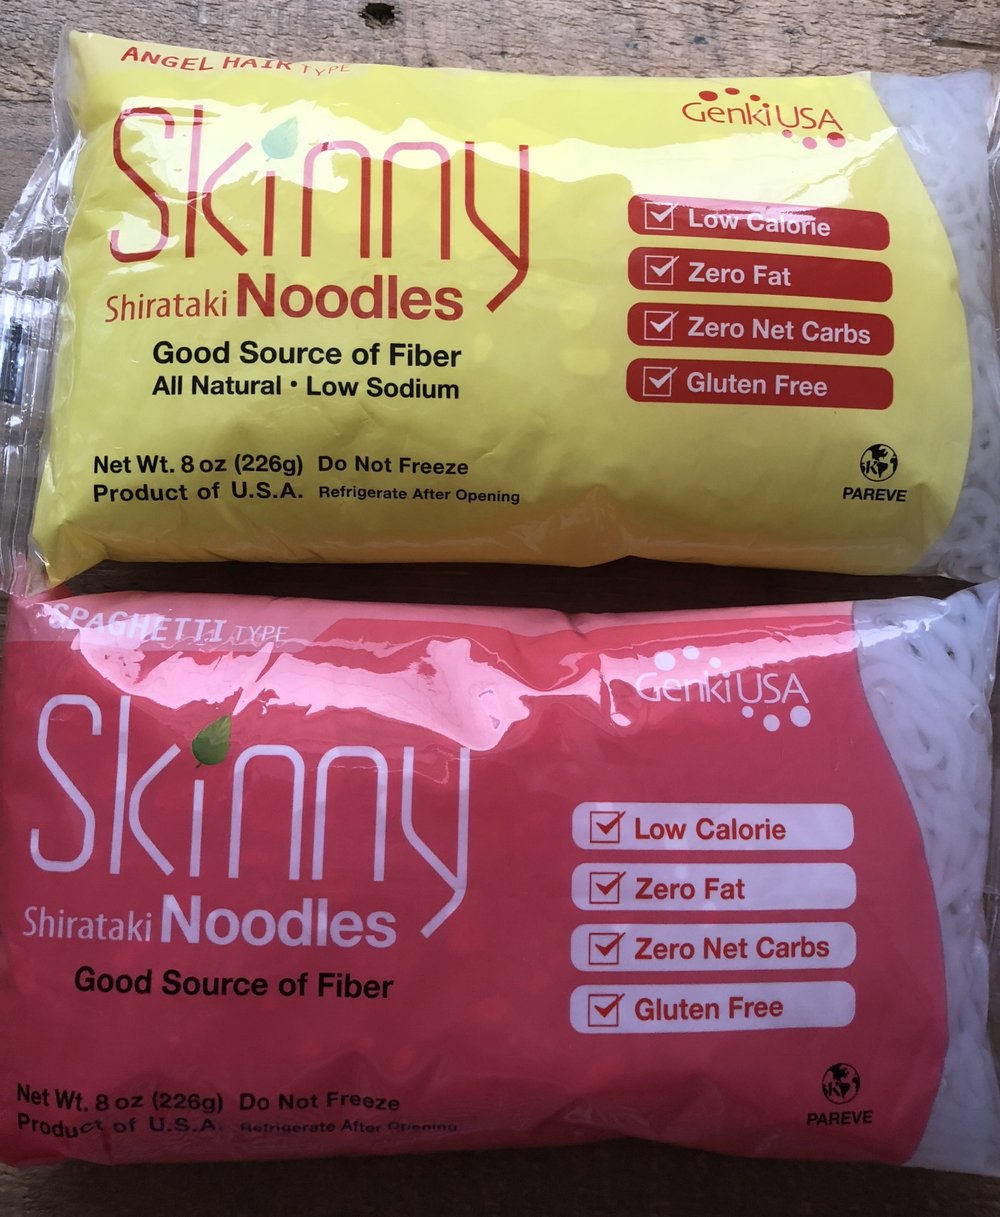 Skinny Noodles